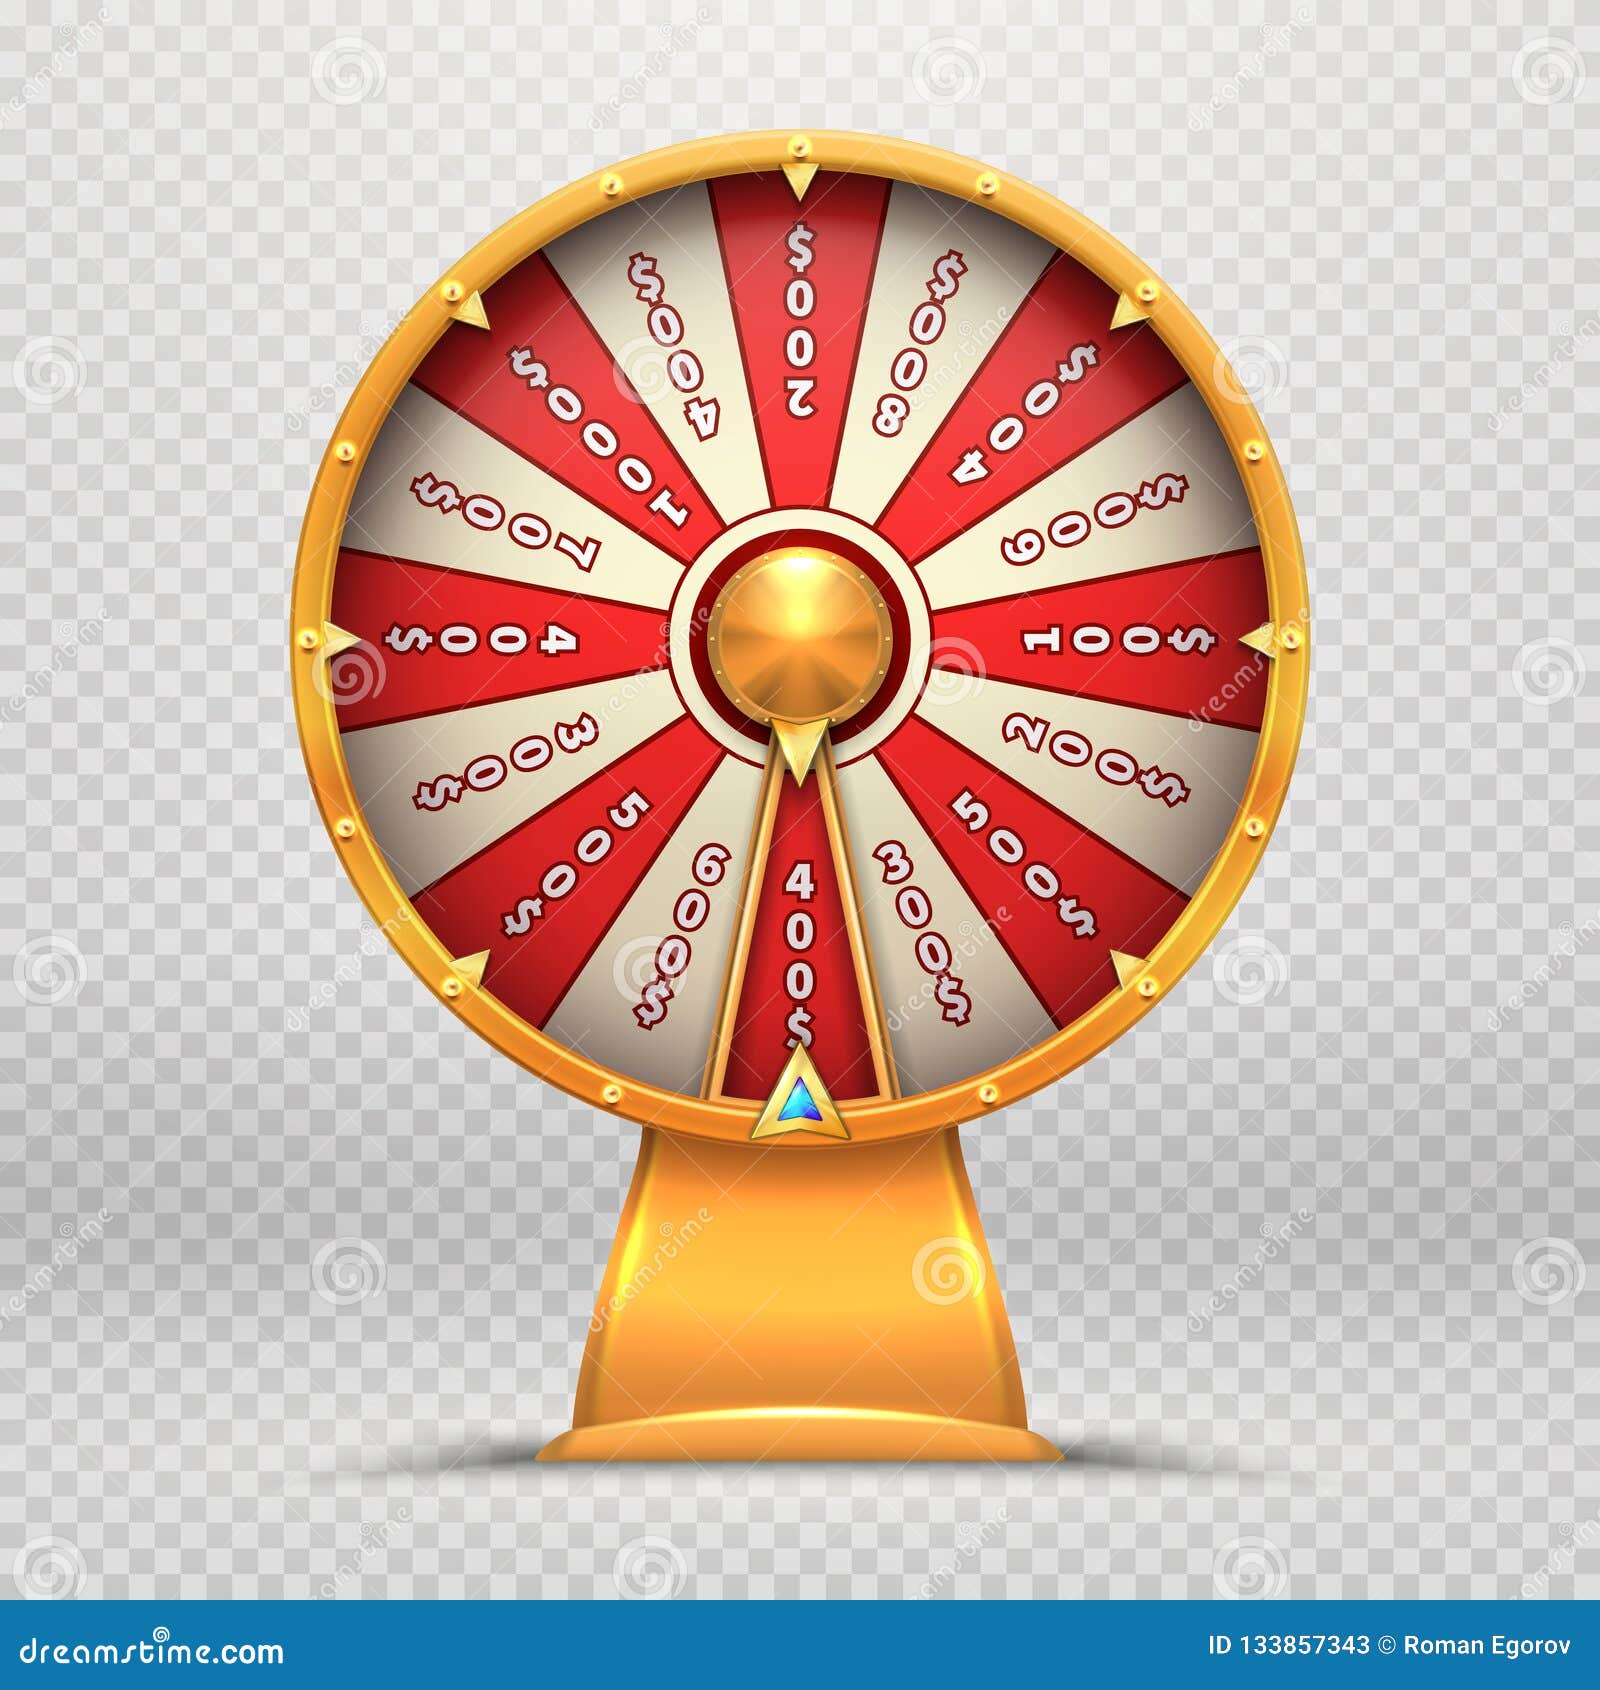 DOITOOL Roue porte-bonheur Tombola Wheel of Fortune - Pour jeux de